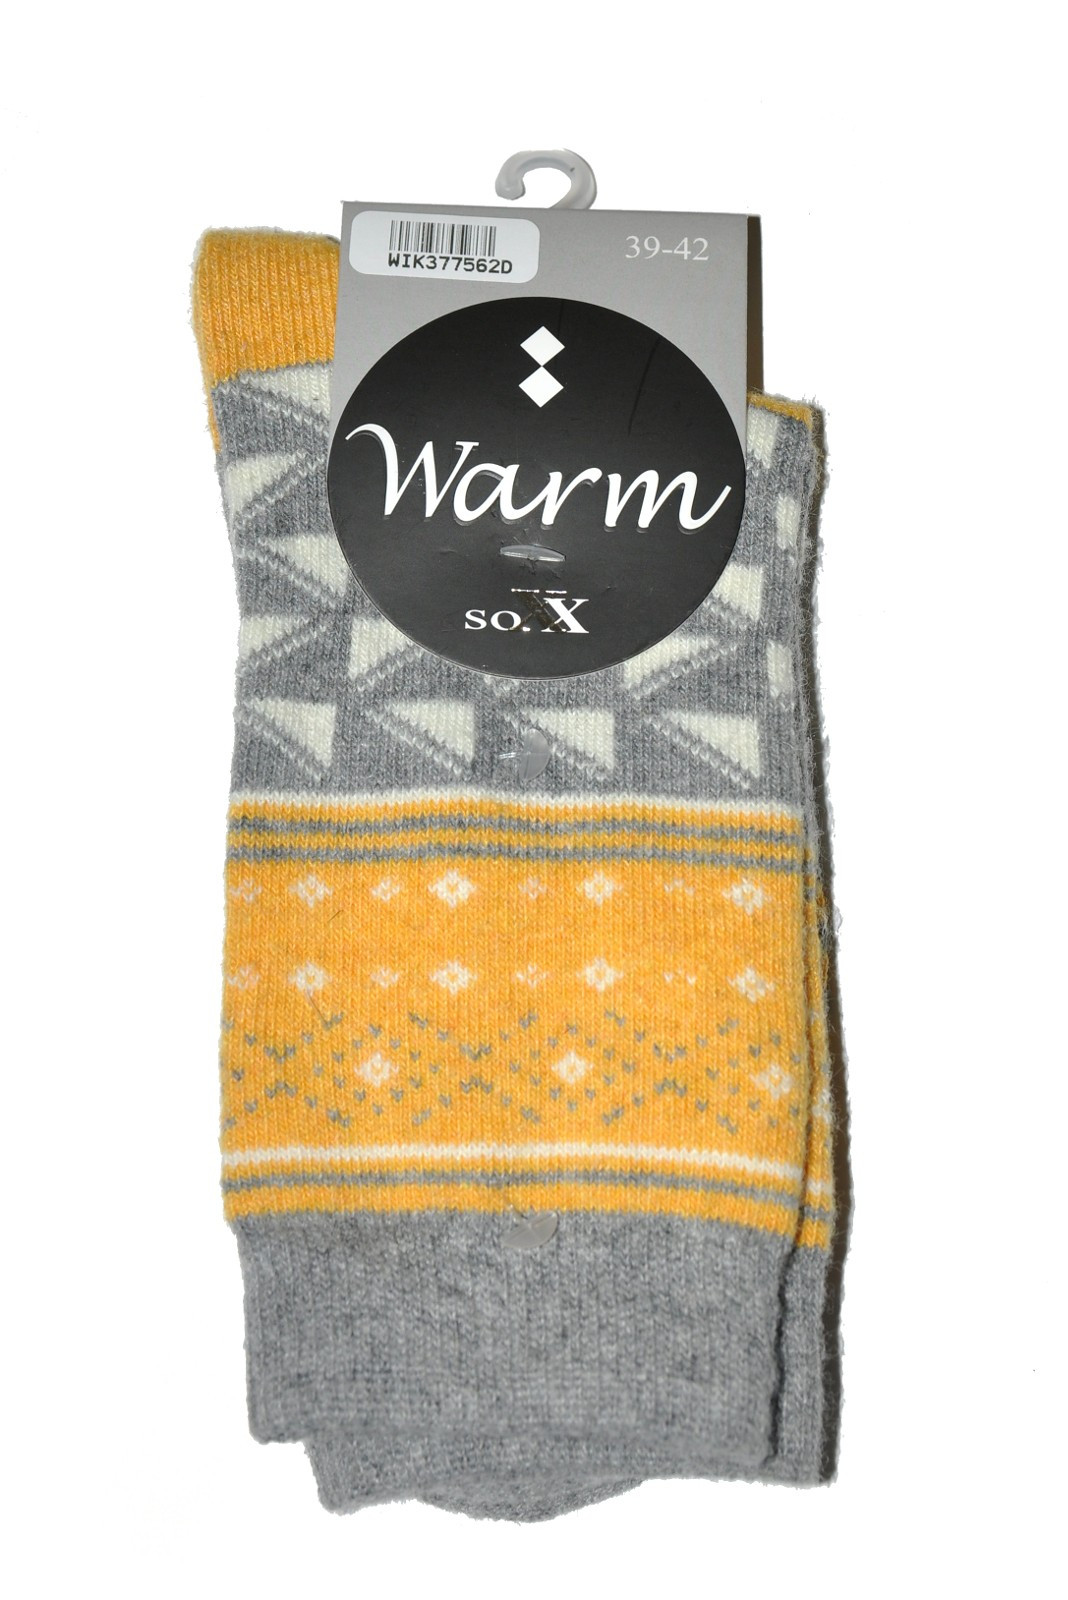 Dámské ponožky WiK 37756 Warm šedá 39-42